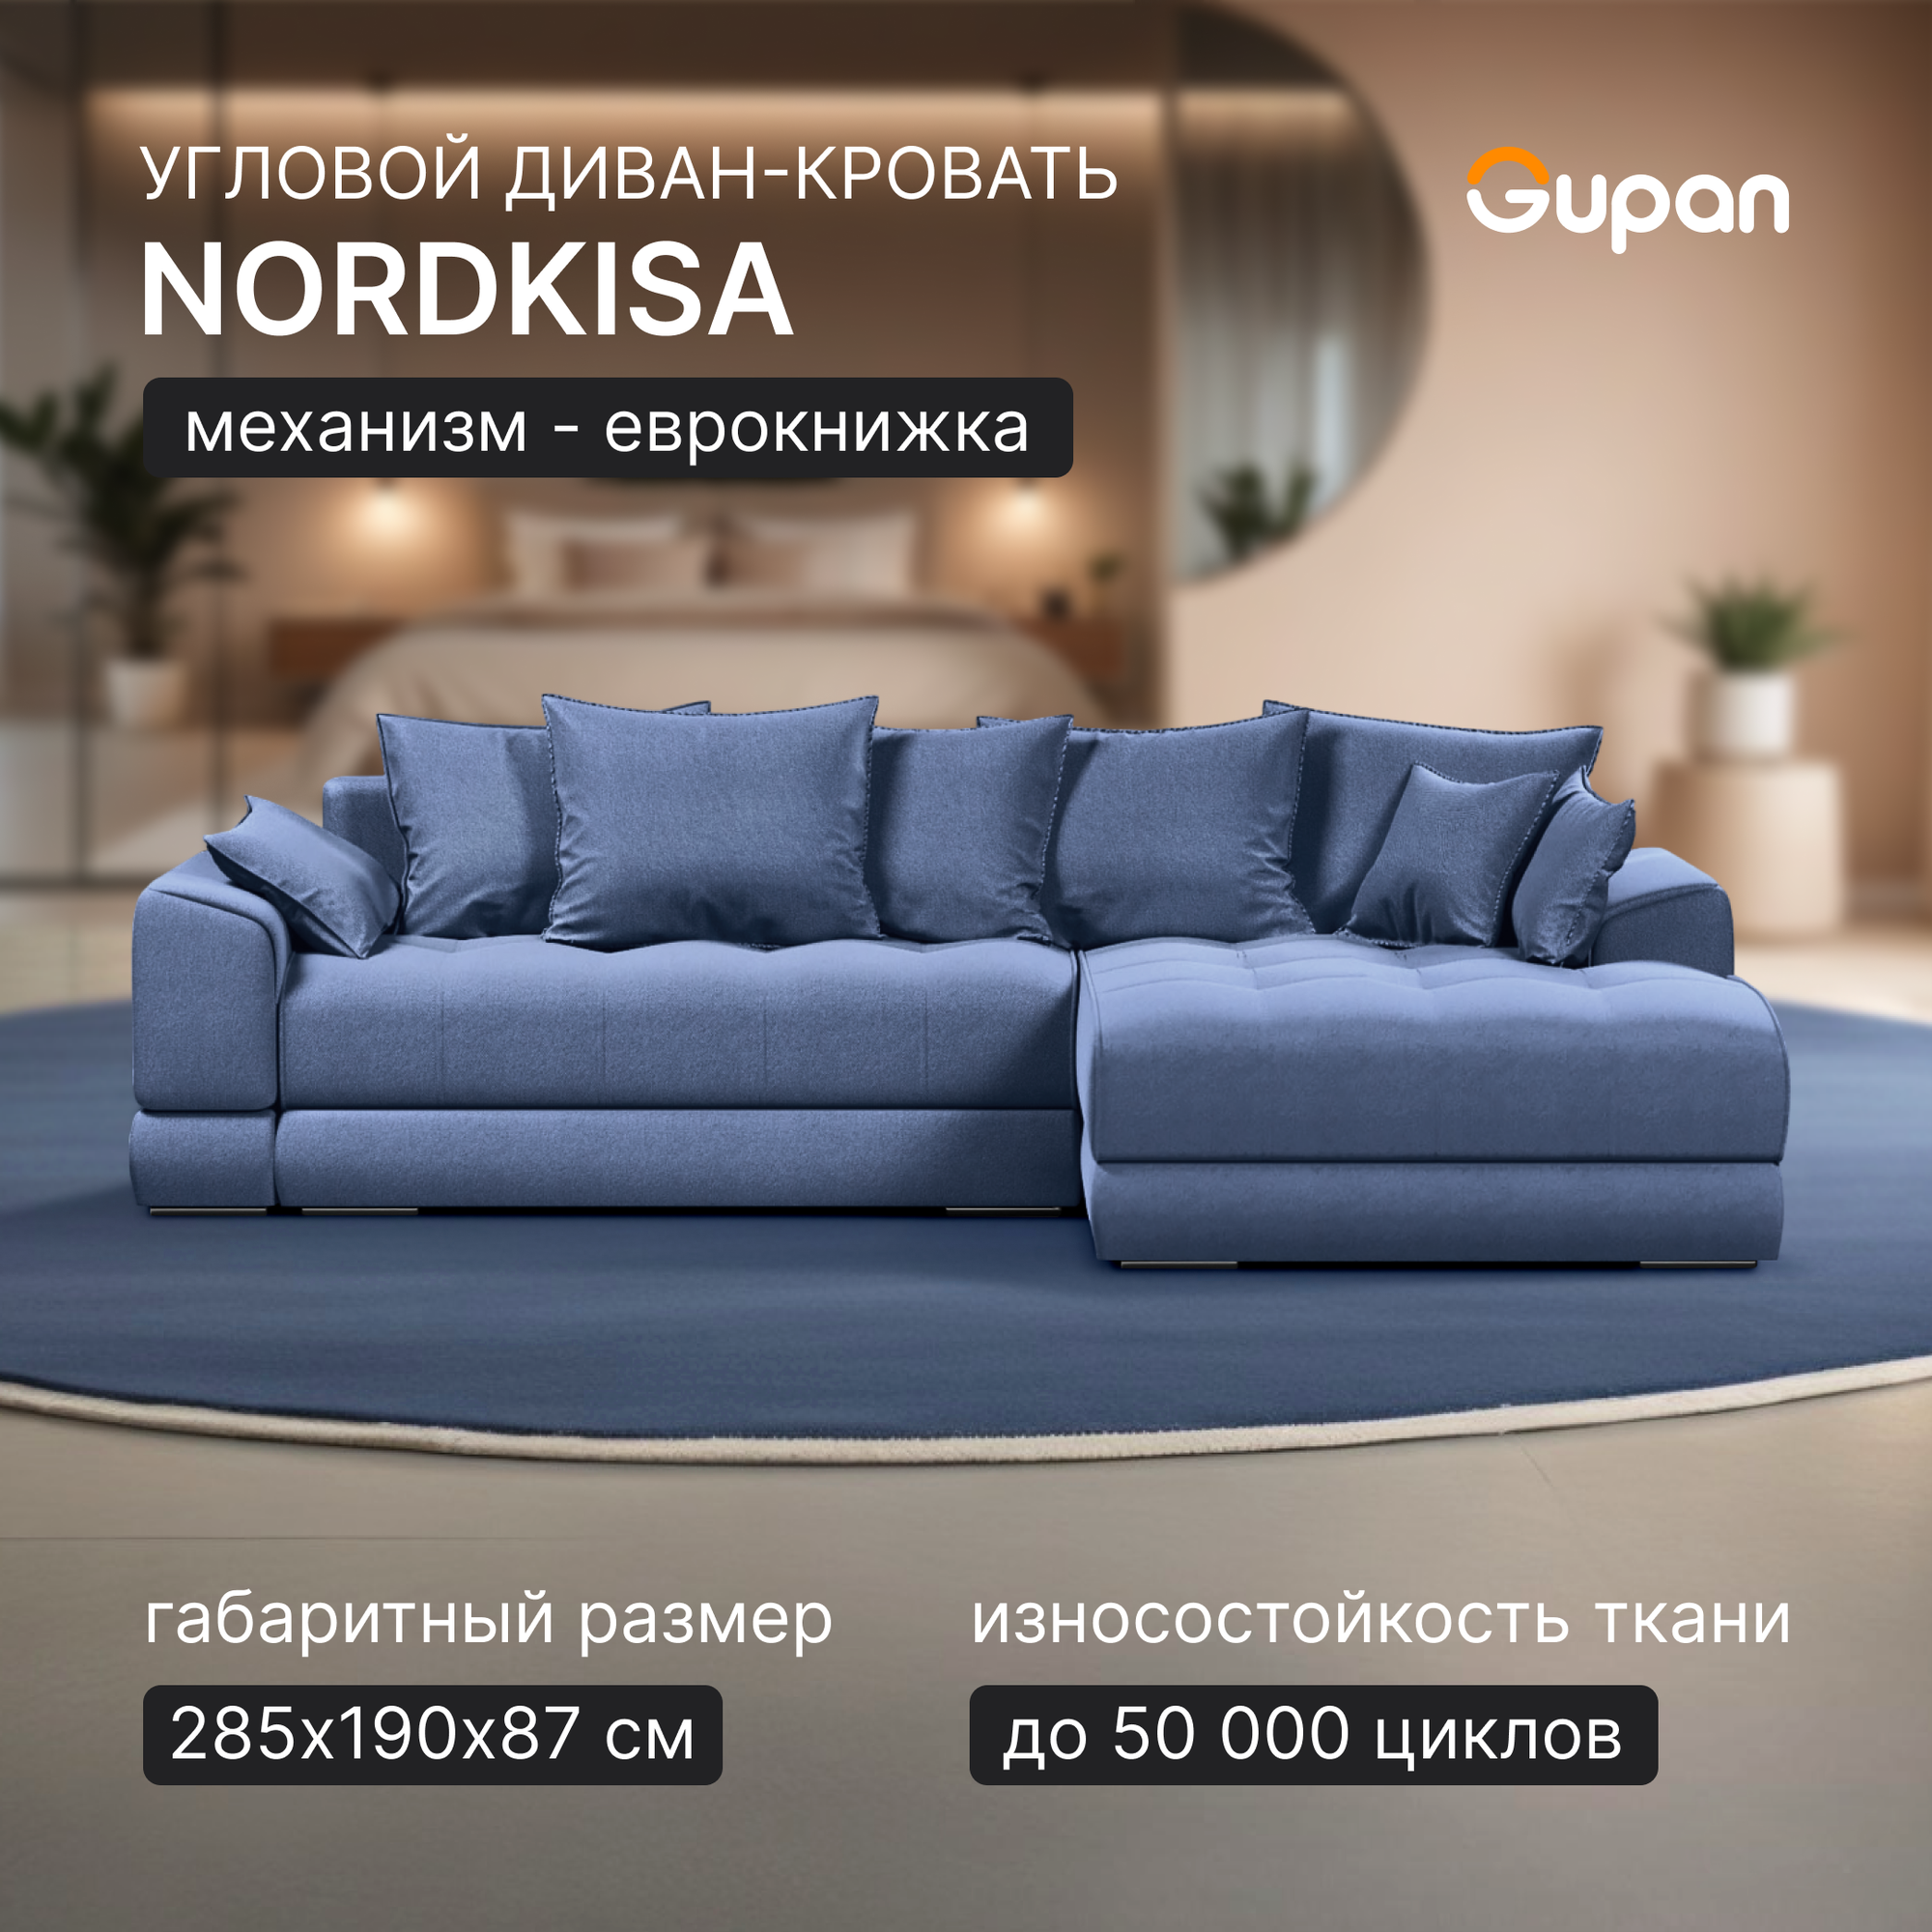 Угловой диван-кровать Gupan Nordkisa, механизм Еврокнижка, 285х190х87 см, наполнитель ППУ, ящик для белья, цвет Amigo Navy, угол справа